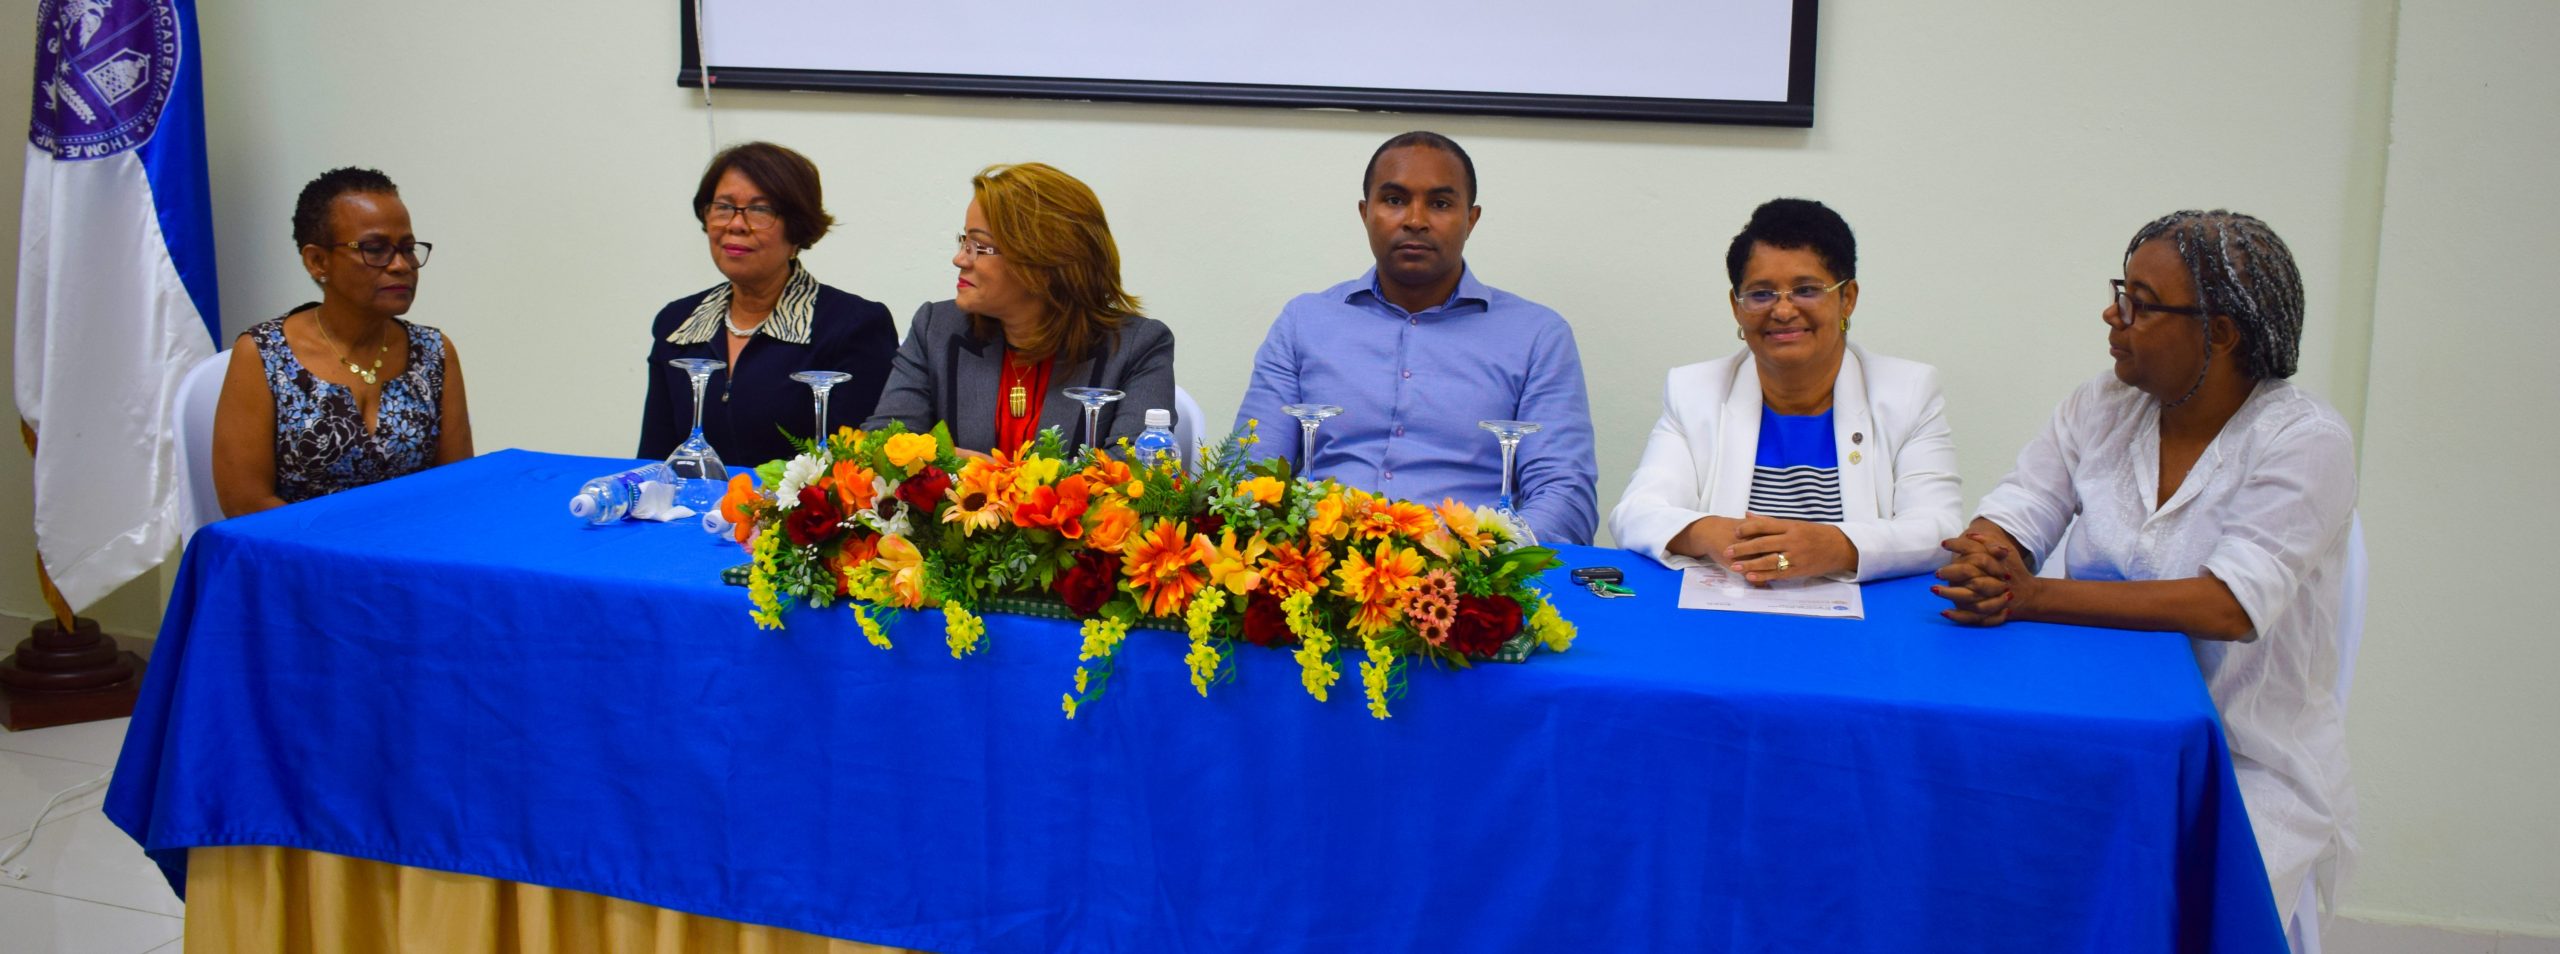 Imparten taller sobre rediseño de planes de estudio con enfoque basado en competencias en UASD San Juan